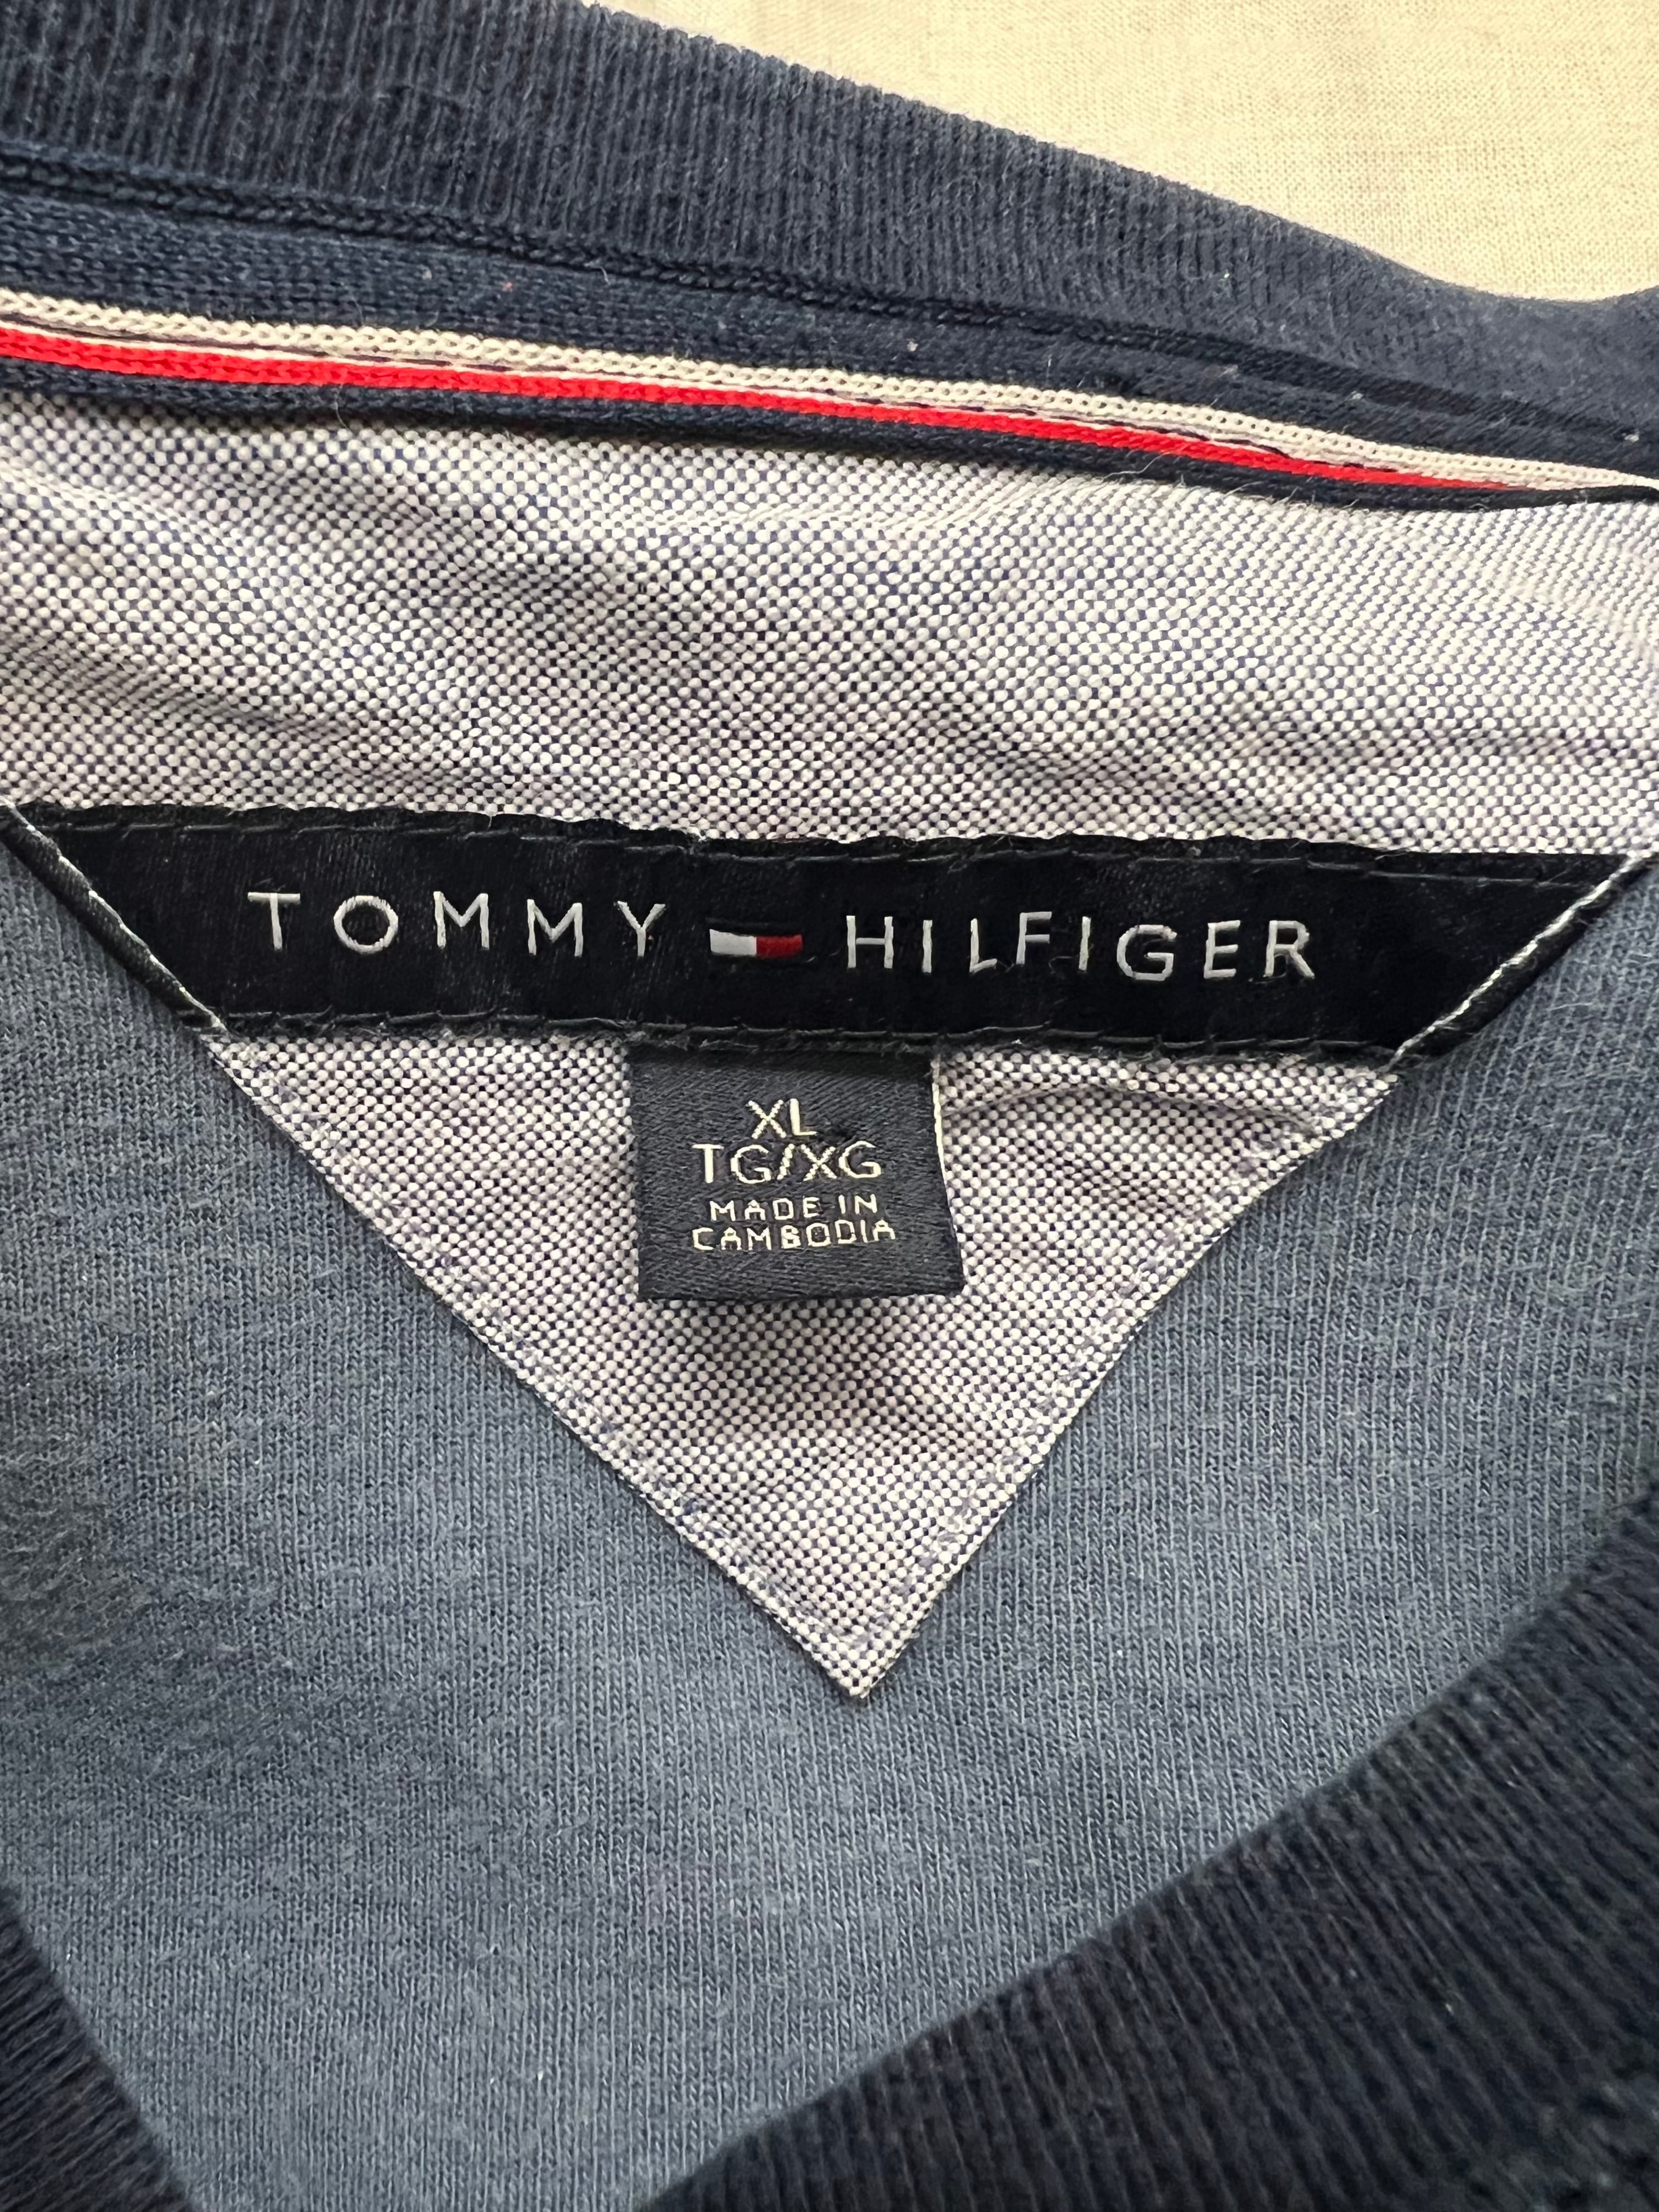 TOMMY HILFIGER cotton knit | waiwai